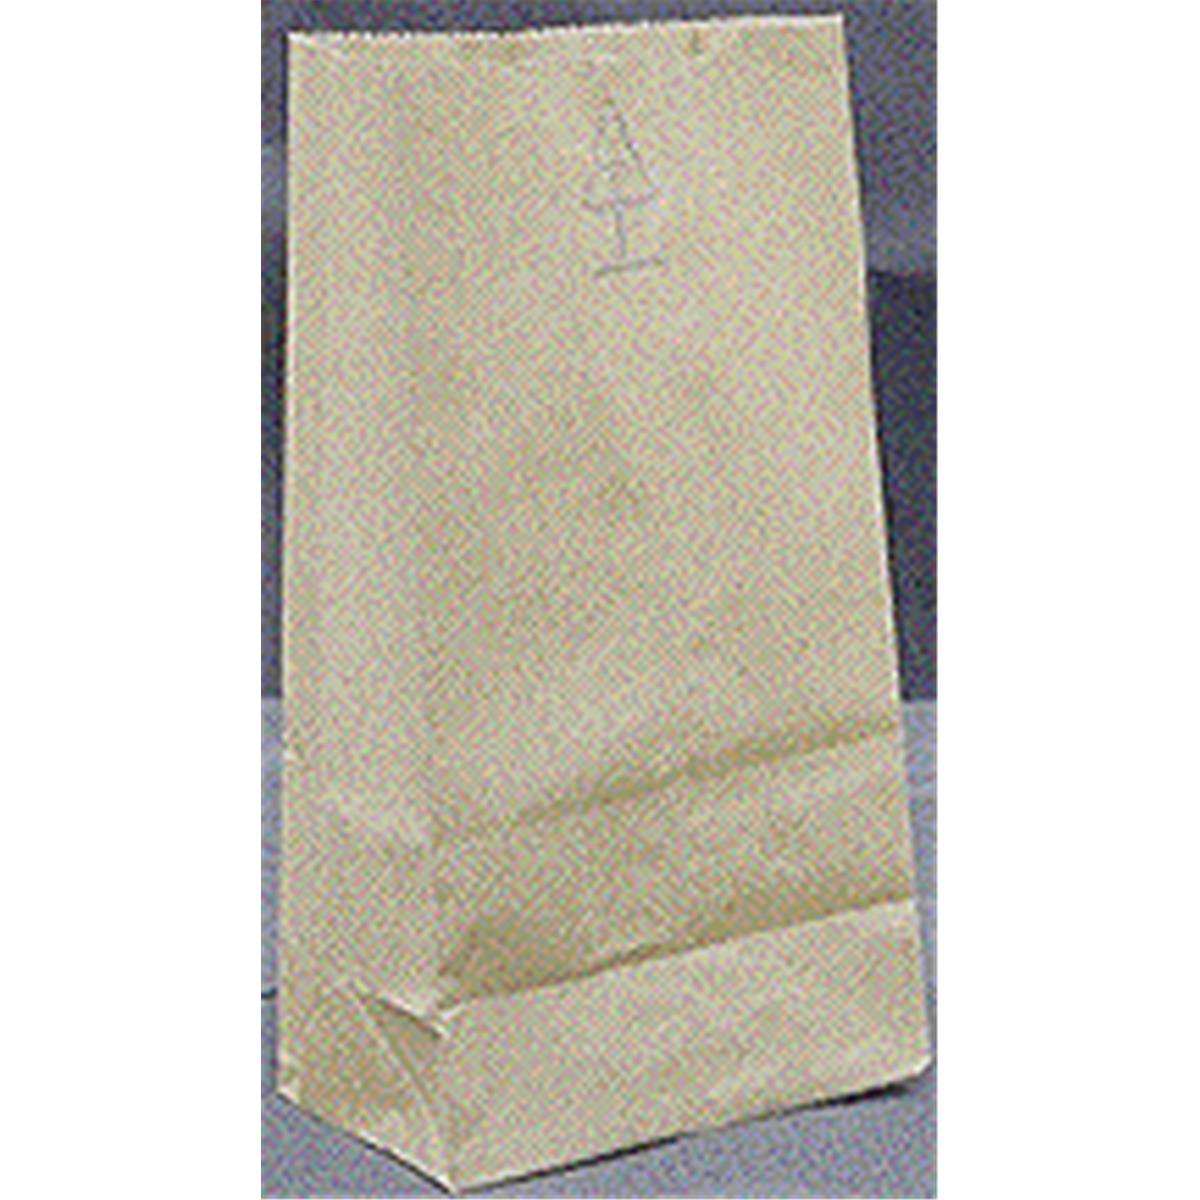 18405 5 Lbs Grocery Bags, Brown Kraft Paper - Pack Of 500